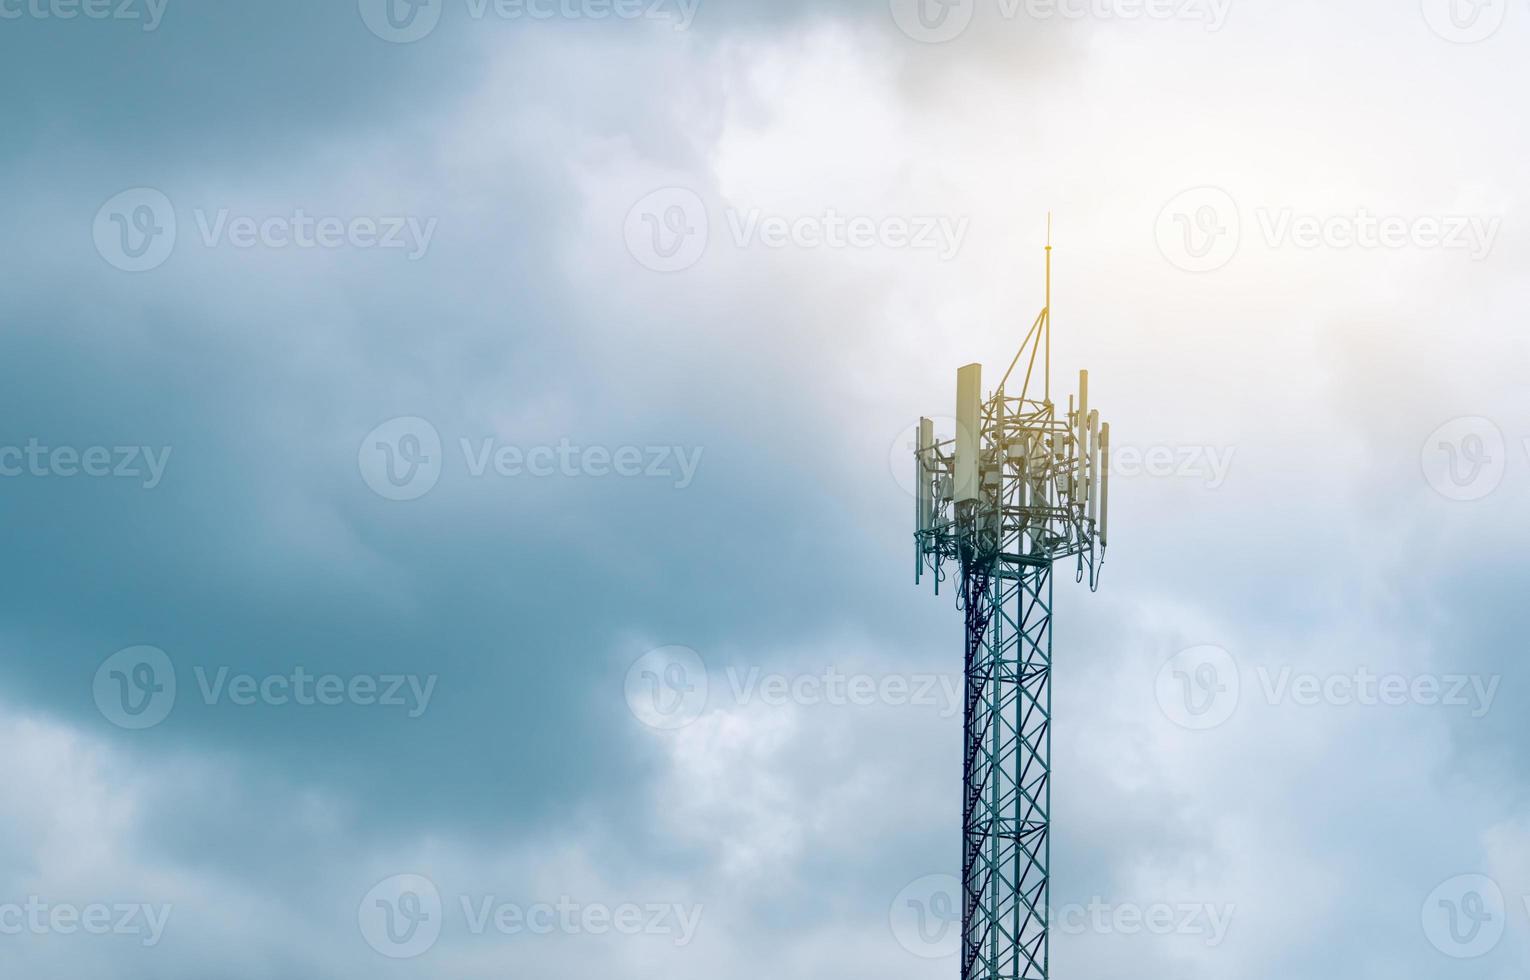 telekommunikationstorn med molnig himmel bakgrund. antenn på blå himmel. radio och satellitstolpe. kommunikationsteknologi. telekommunikationsindustrin. mobilt eller telekom 5g-nätverk. teknologi foto